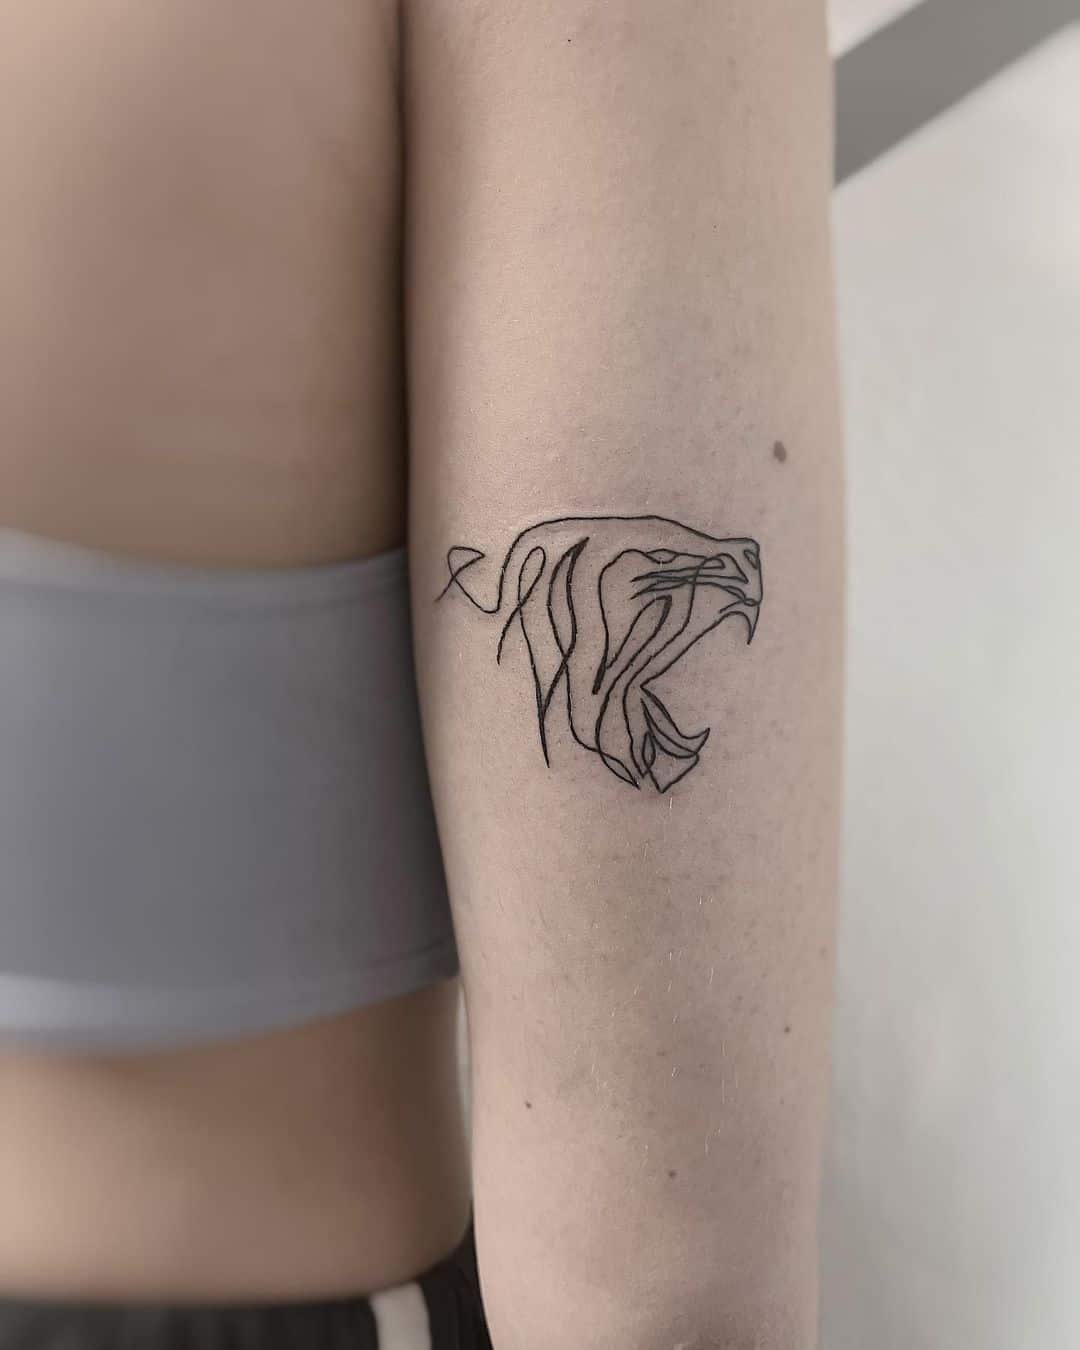 Fineline roaring tattoo by kiwi.tattoo.ink